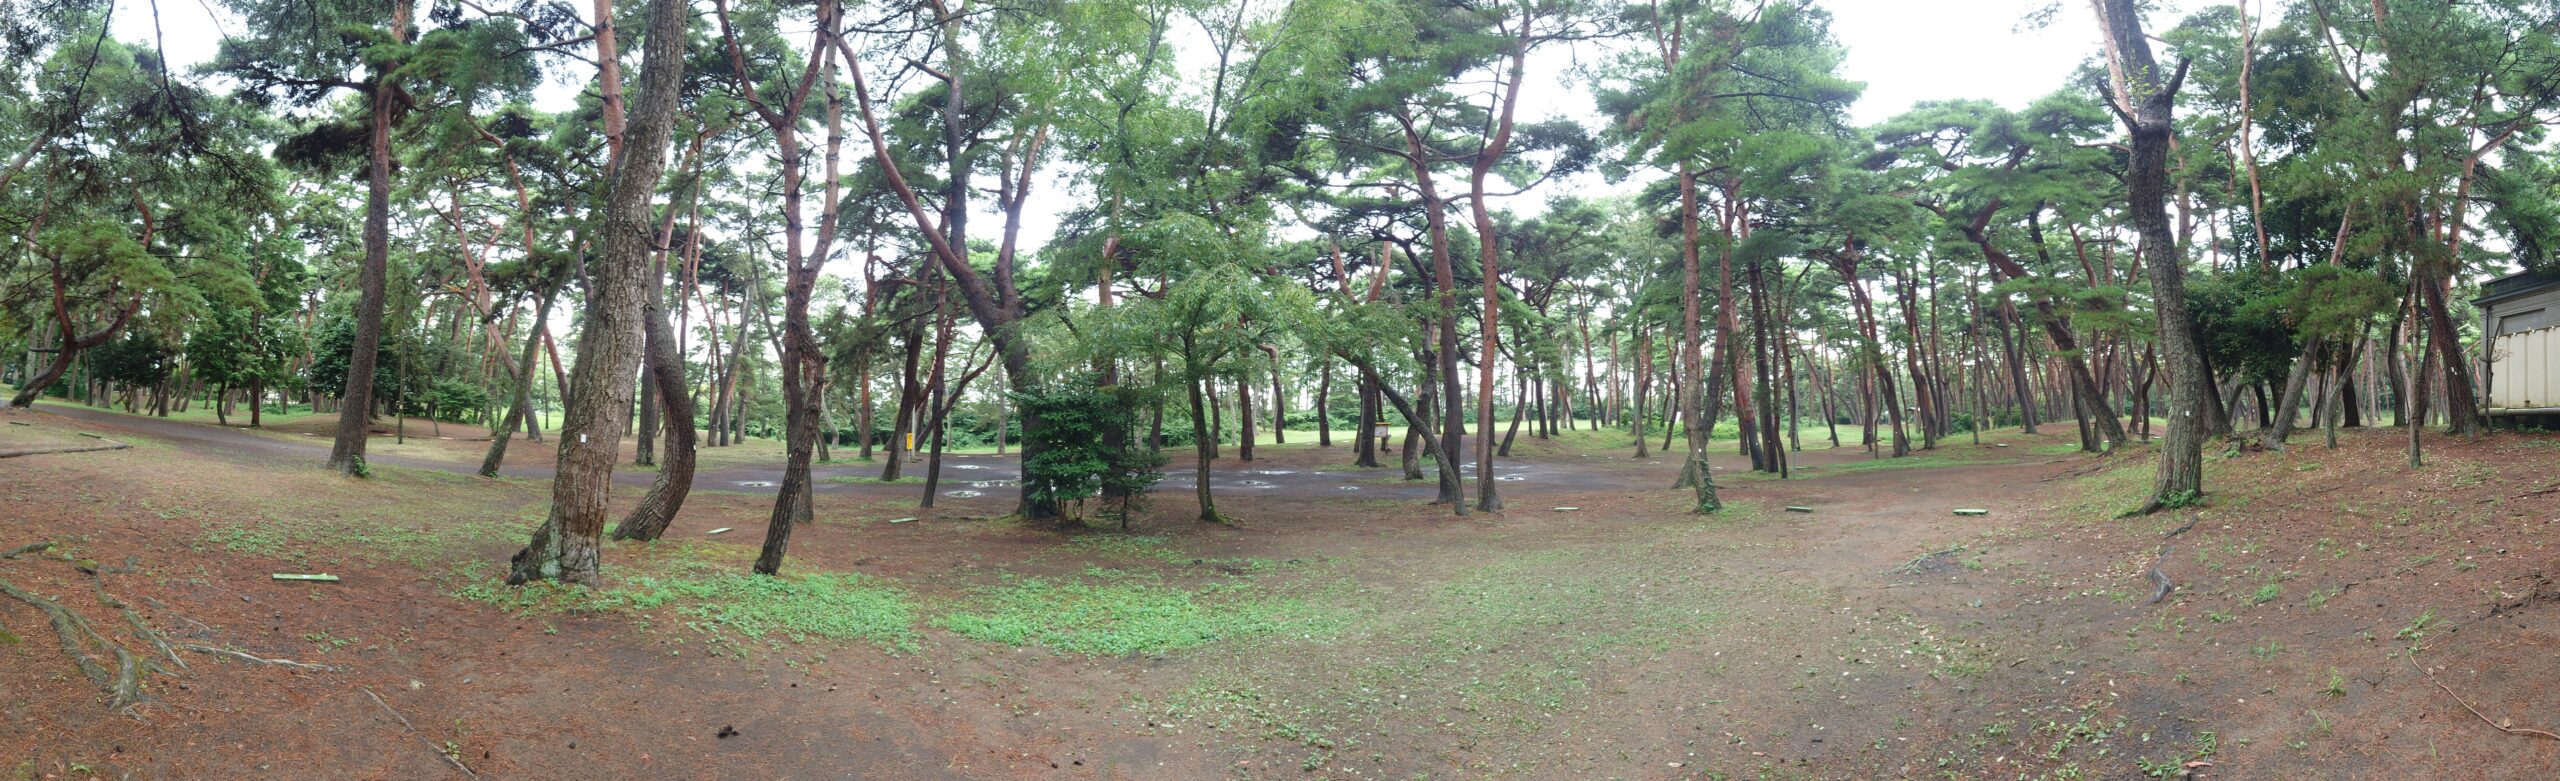 大洗キャンプ場の松林